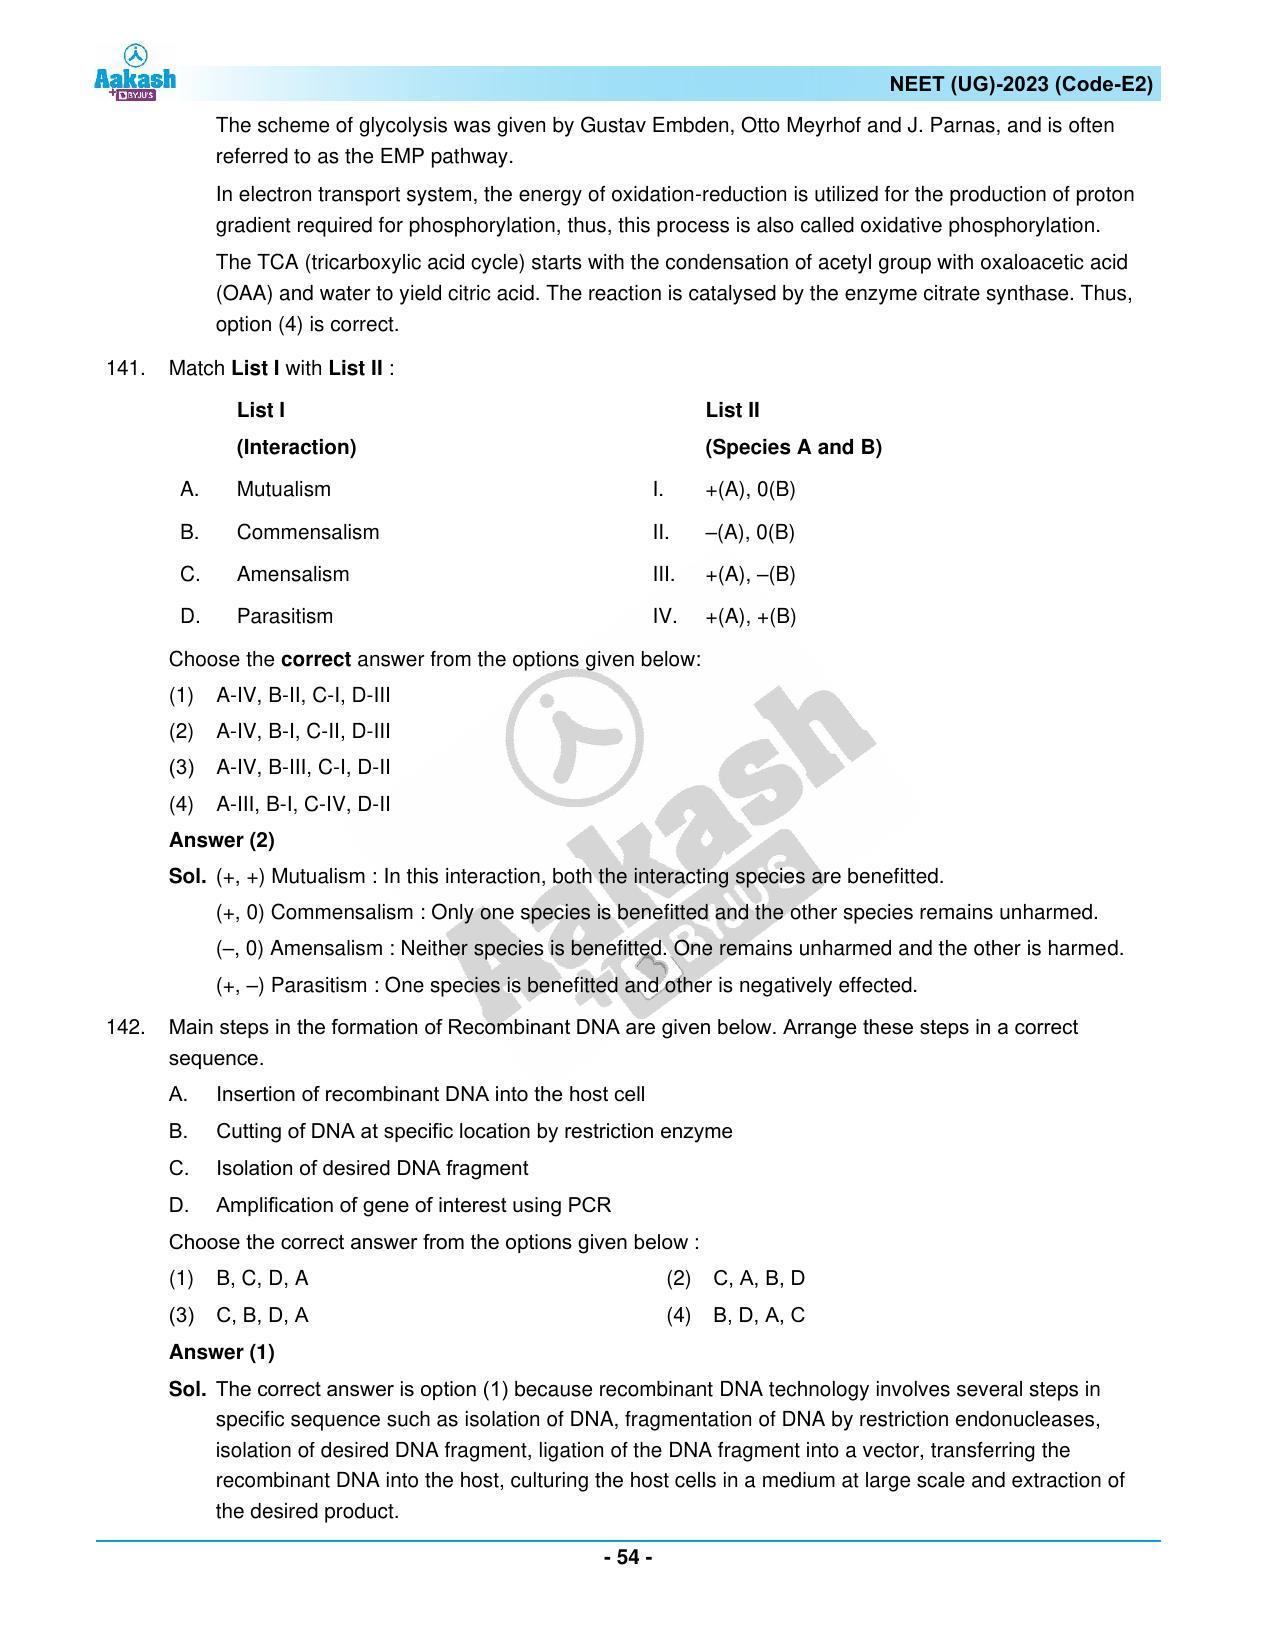 NEET 2023 Question Paper E2 - Page 54